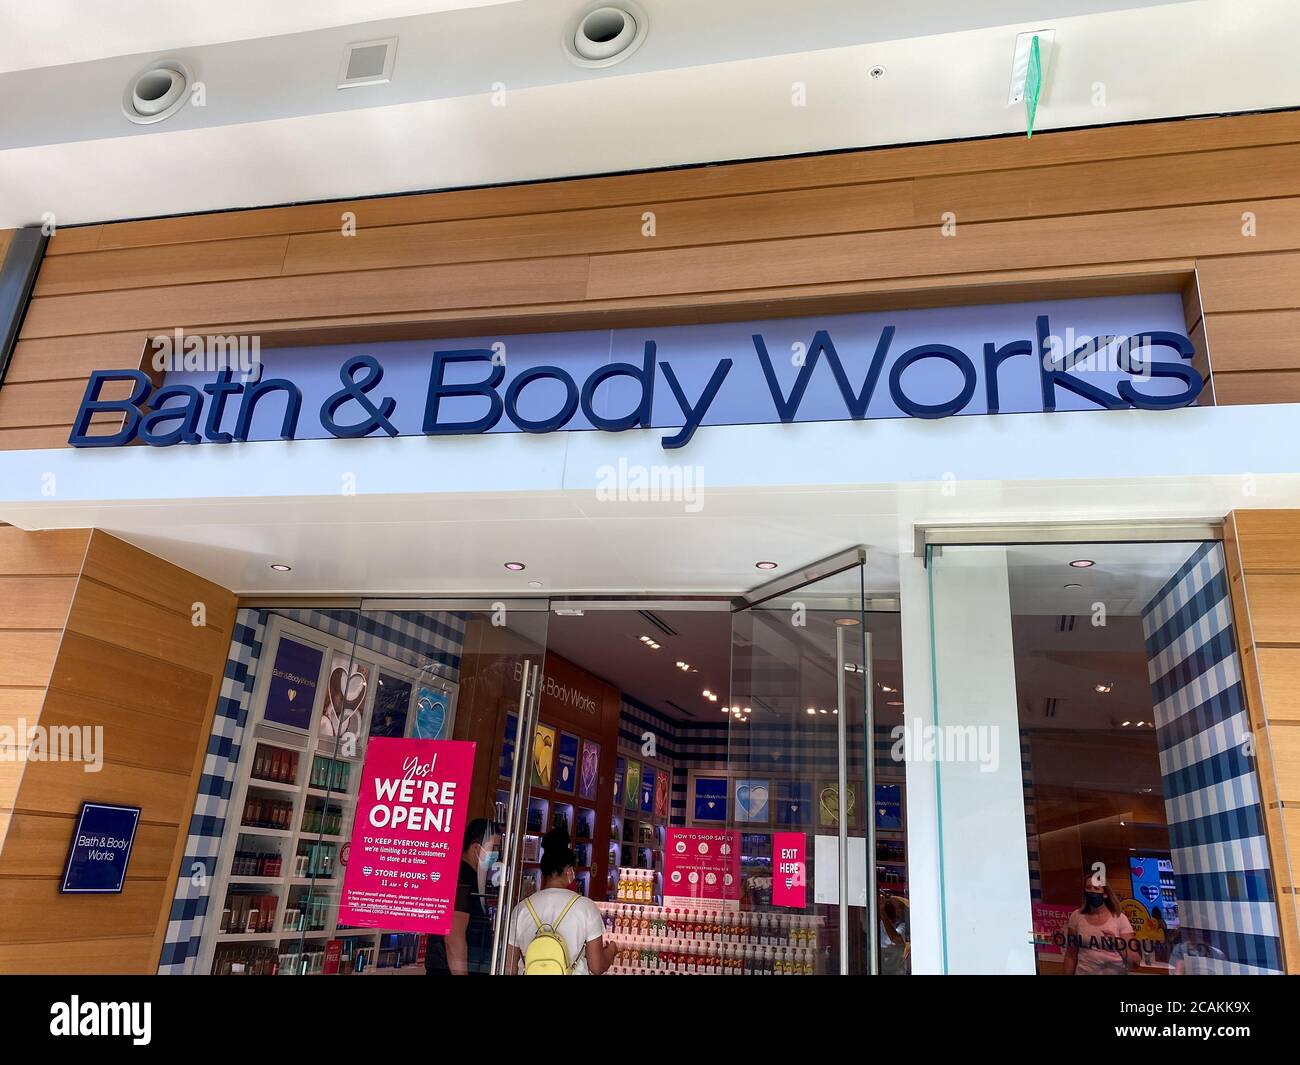 Orlando,FL/USA- 7/4/20: The exterior sign of a Bath & Body Works retail